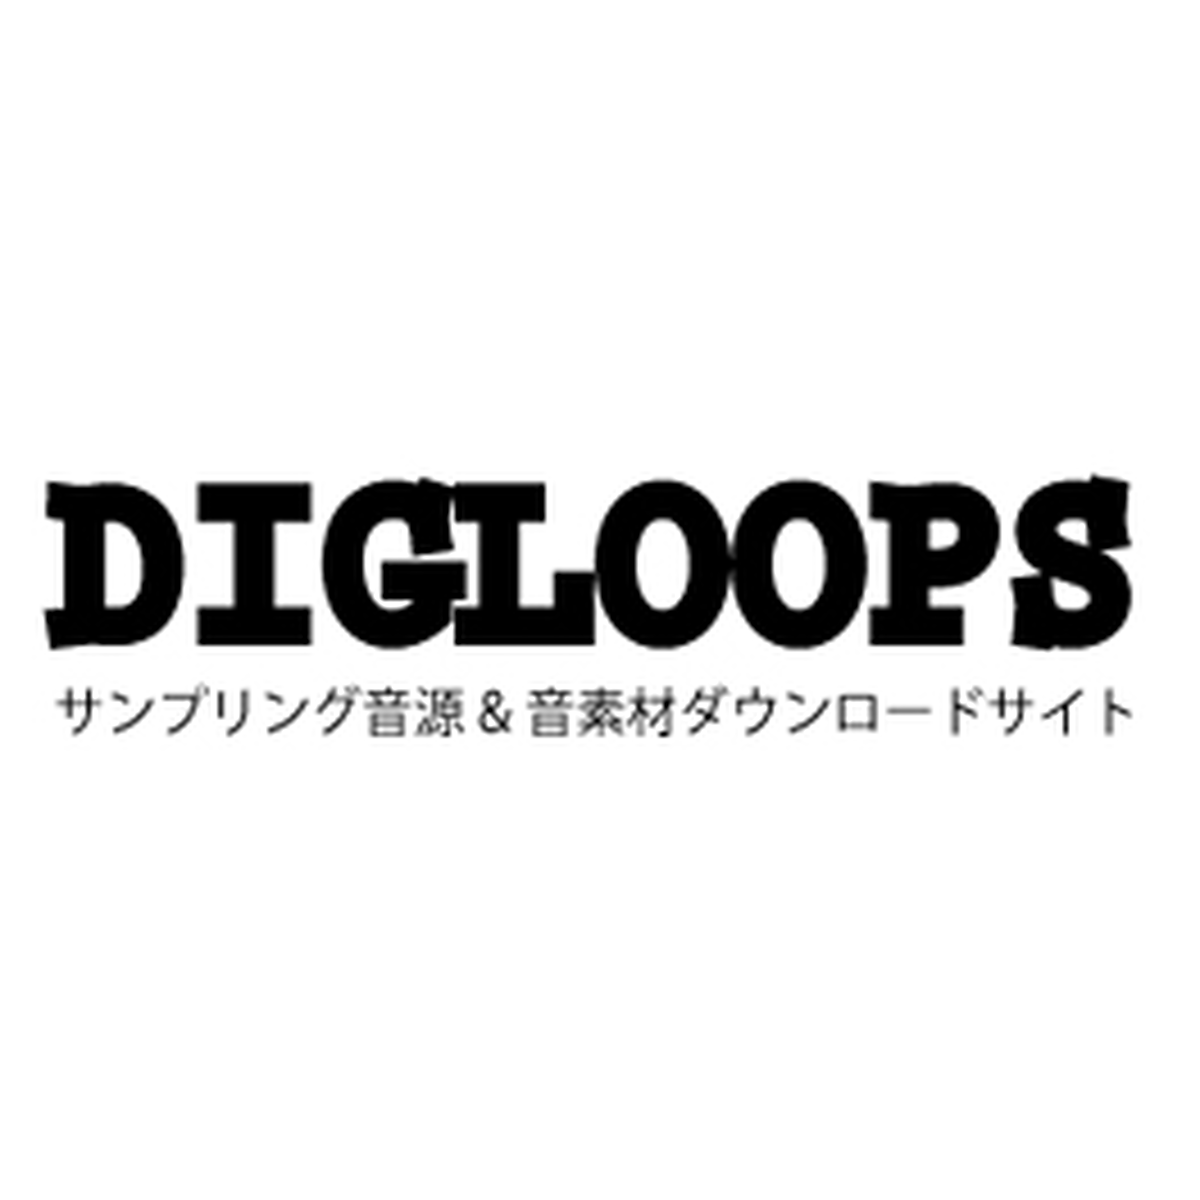 Digloops